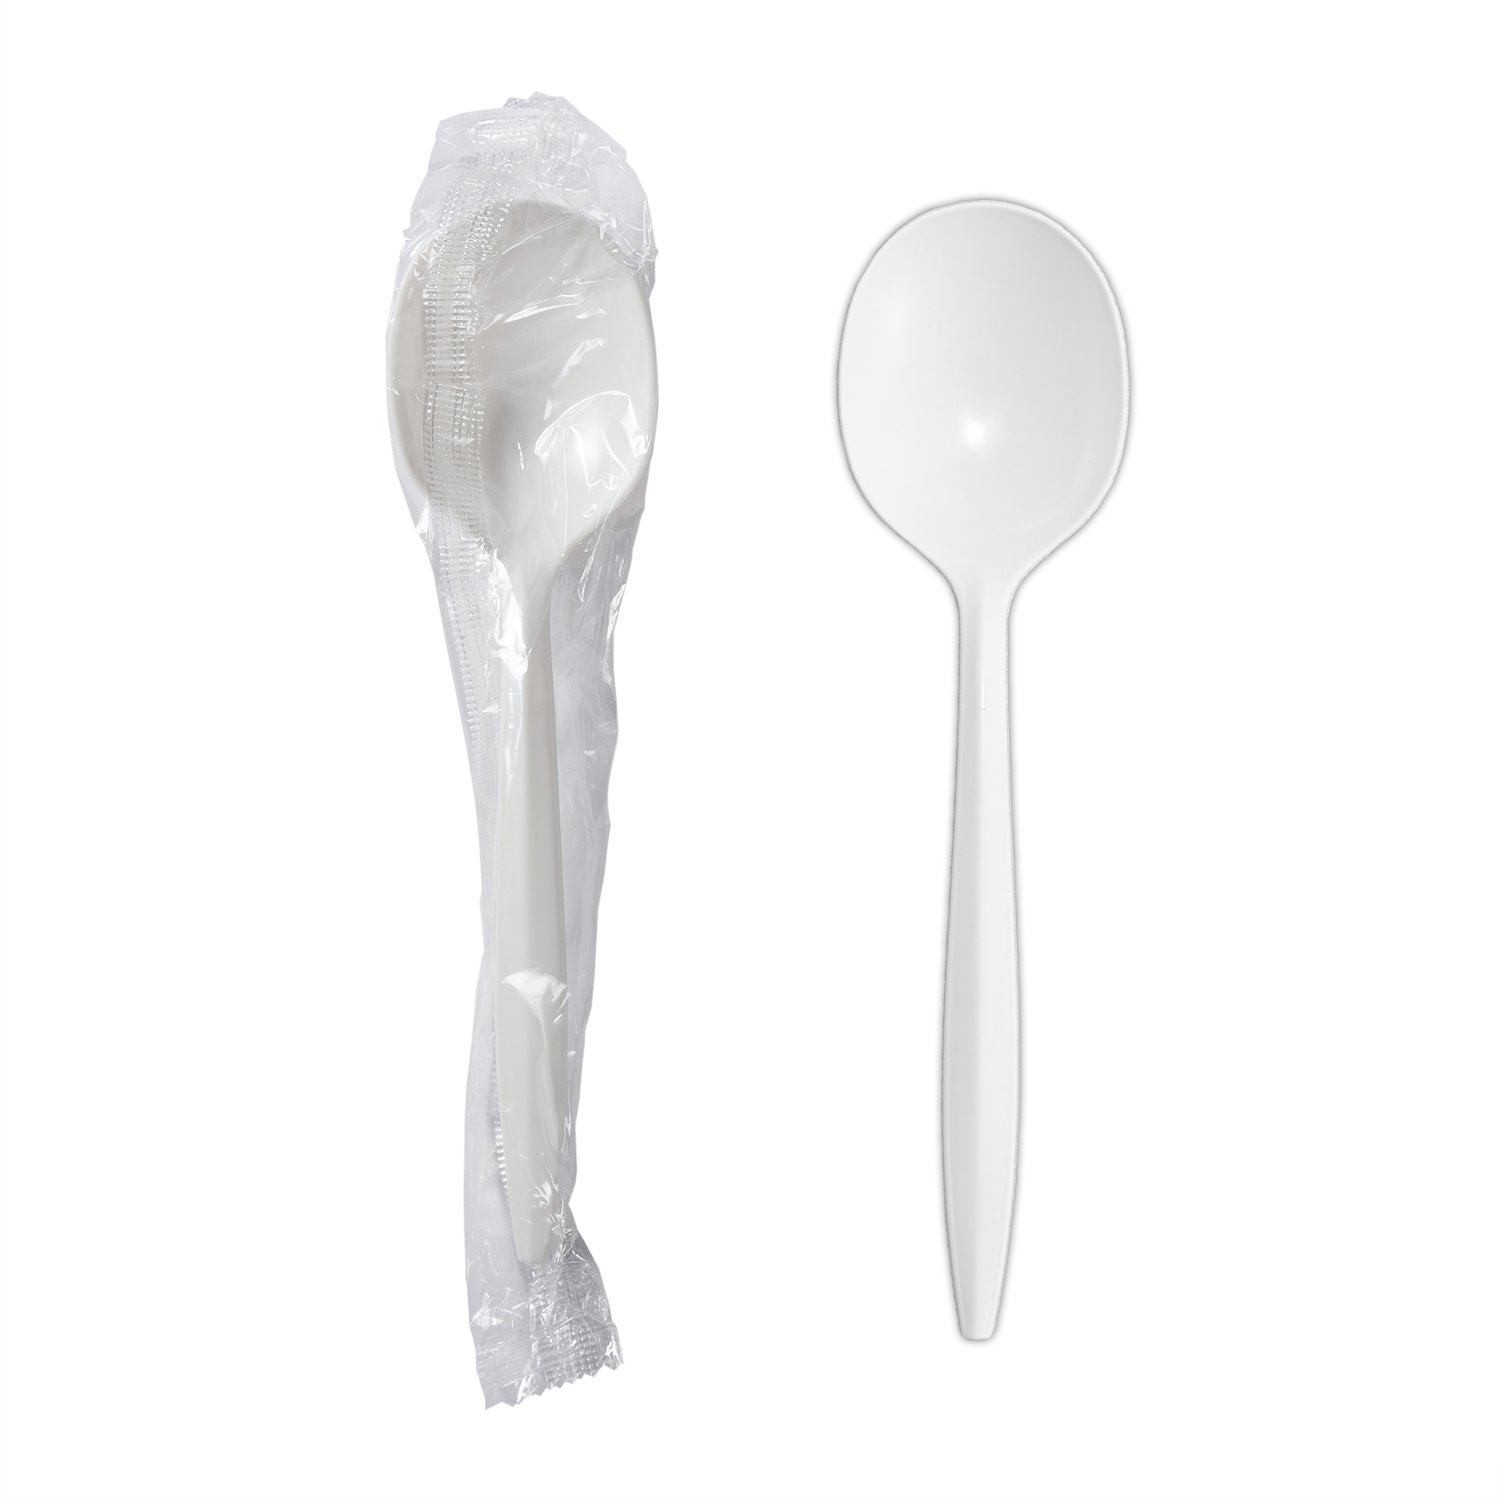 Aïcha Shop - Cuillère +fourchette plastique Plastique incassable ✓ 500f les  deux cuillères plus fourchette Âge 6mois a 2ans 0707394737